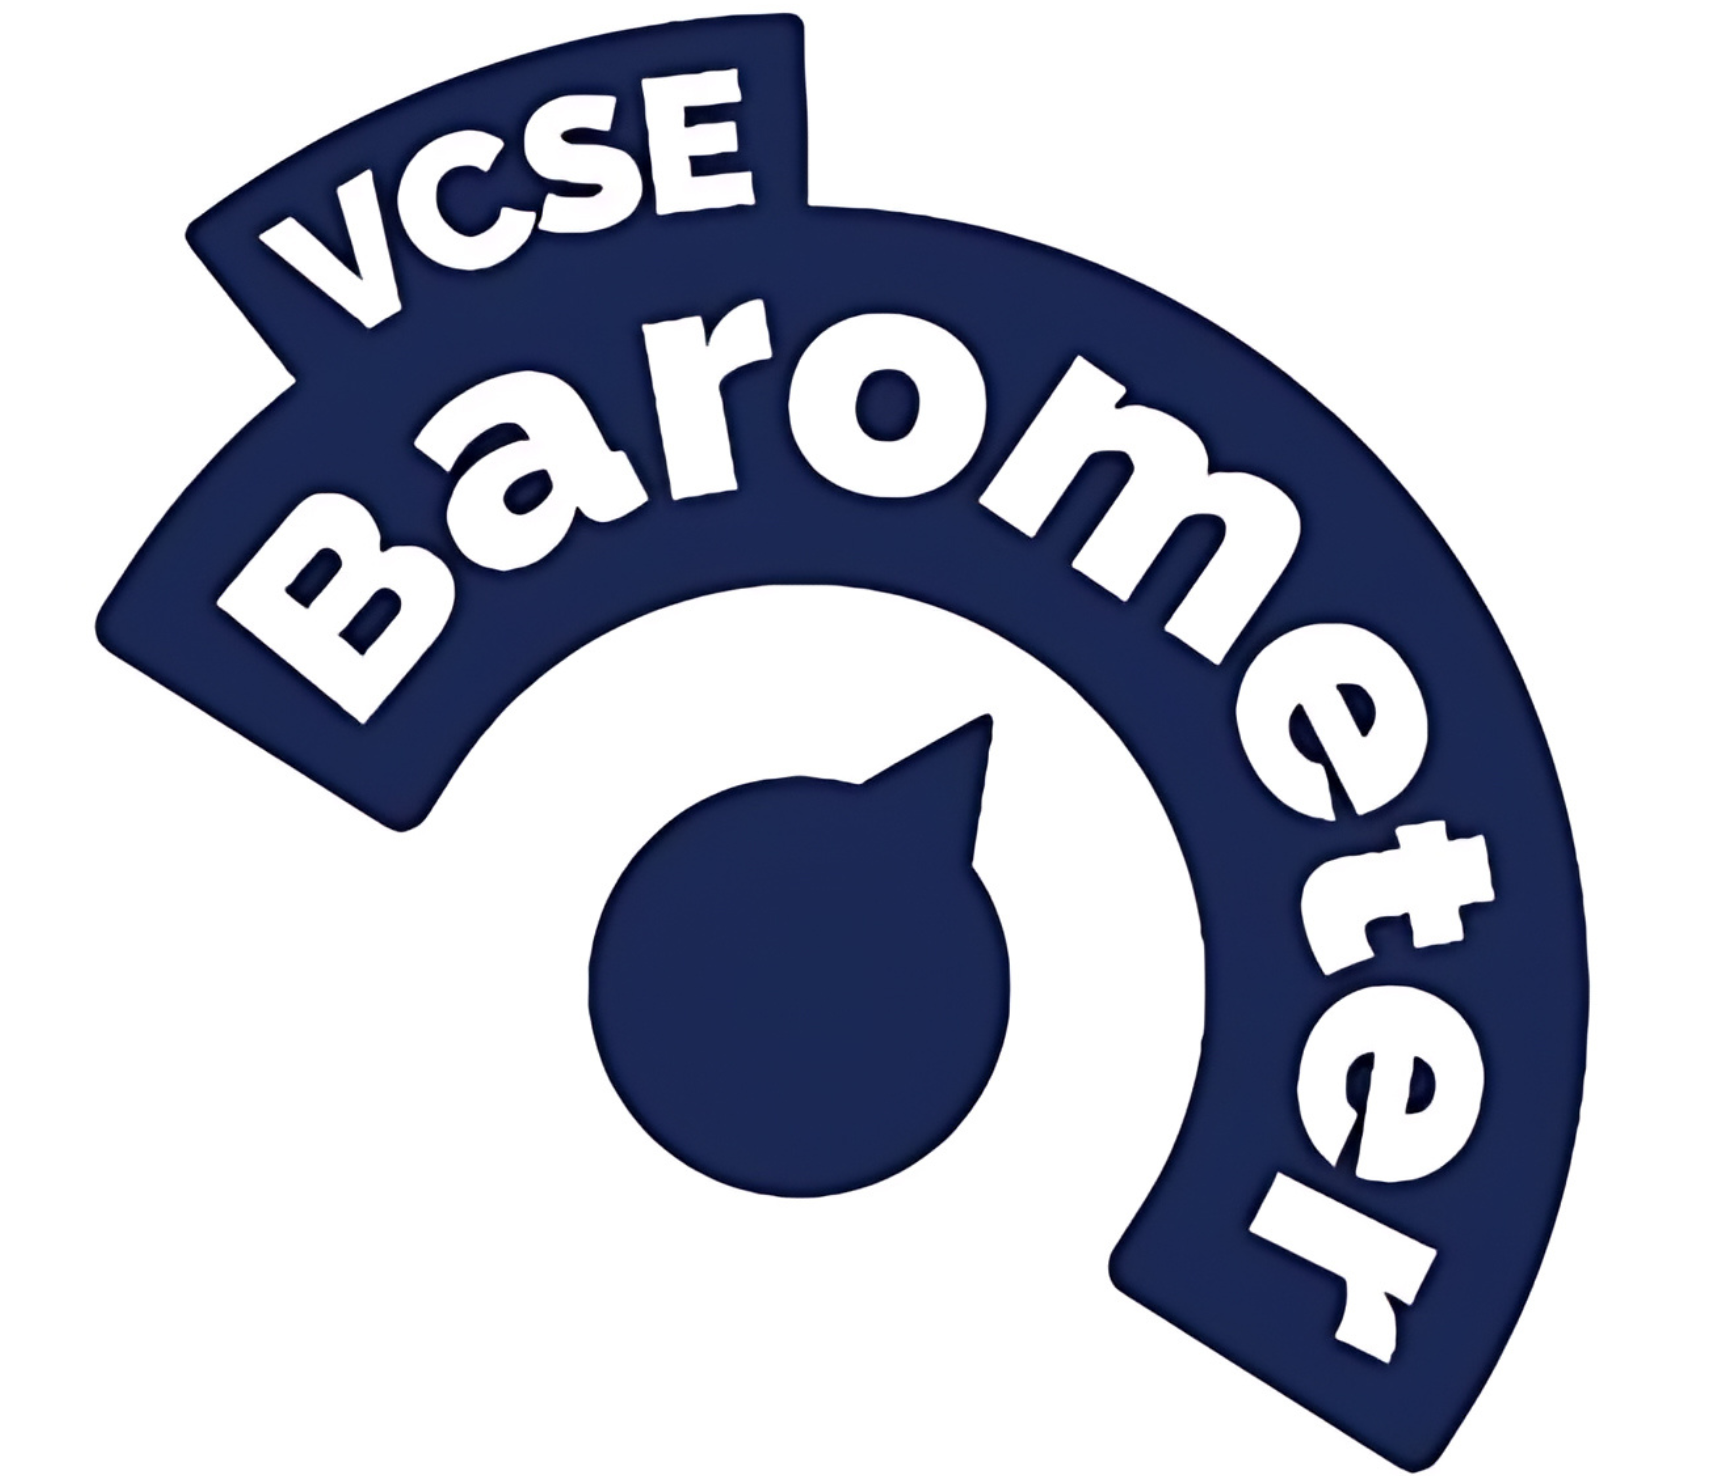 VCSE Barometer Survey